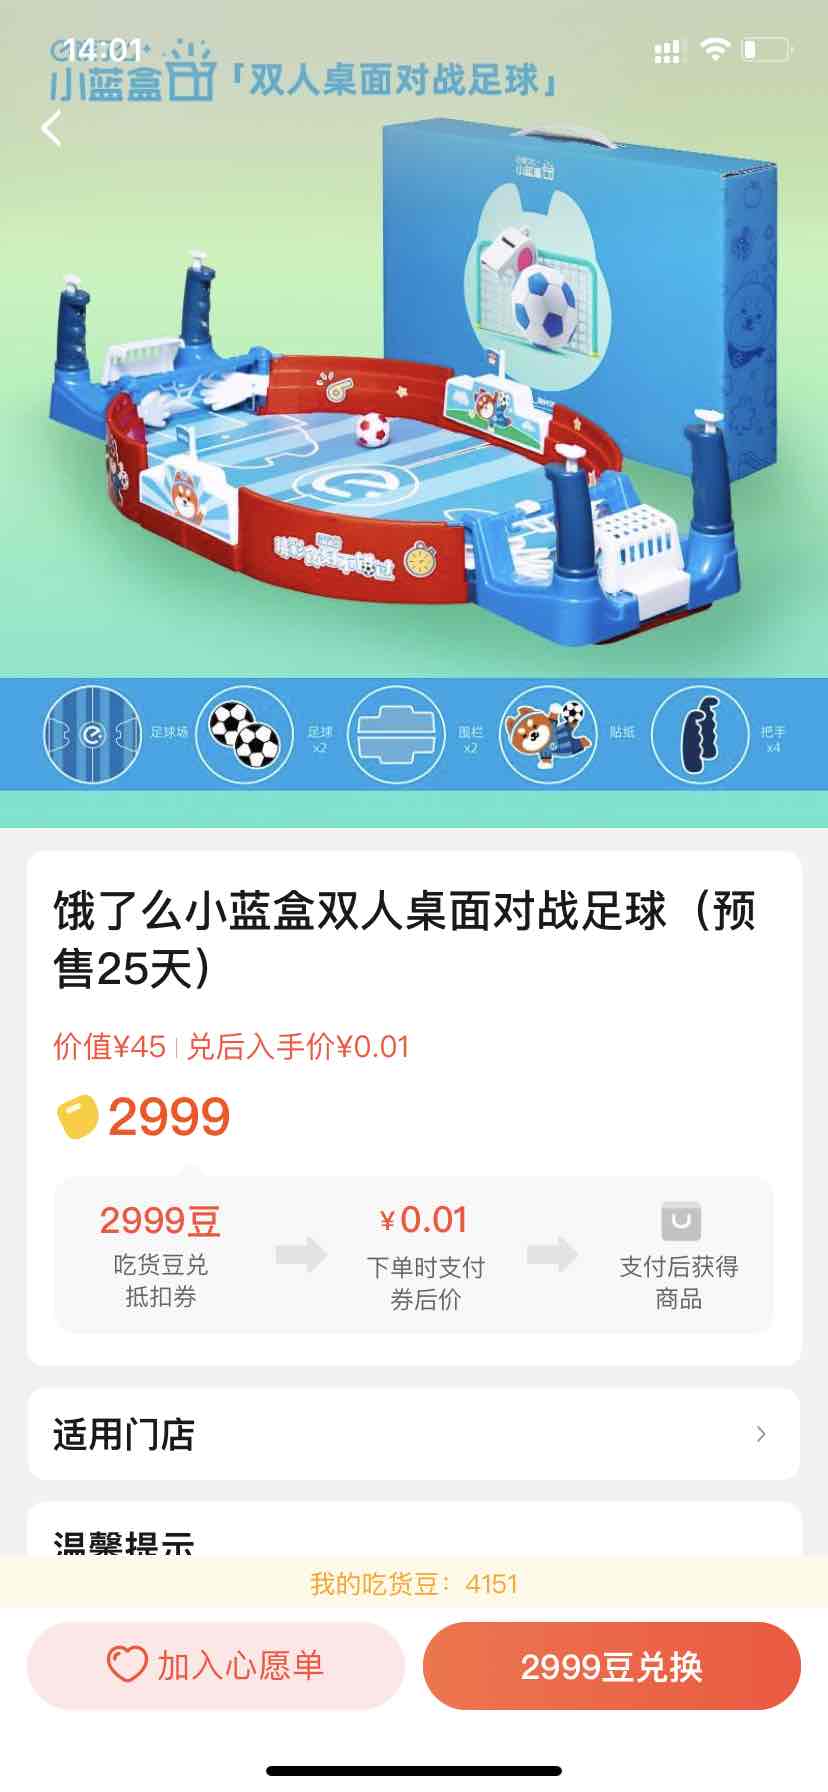 饿了么吃货豆兑换玩具-惠小助(52huixz.com)